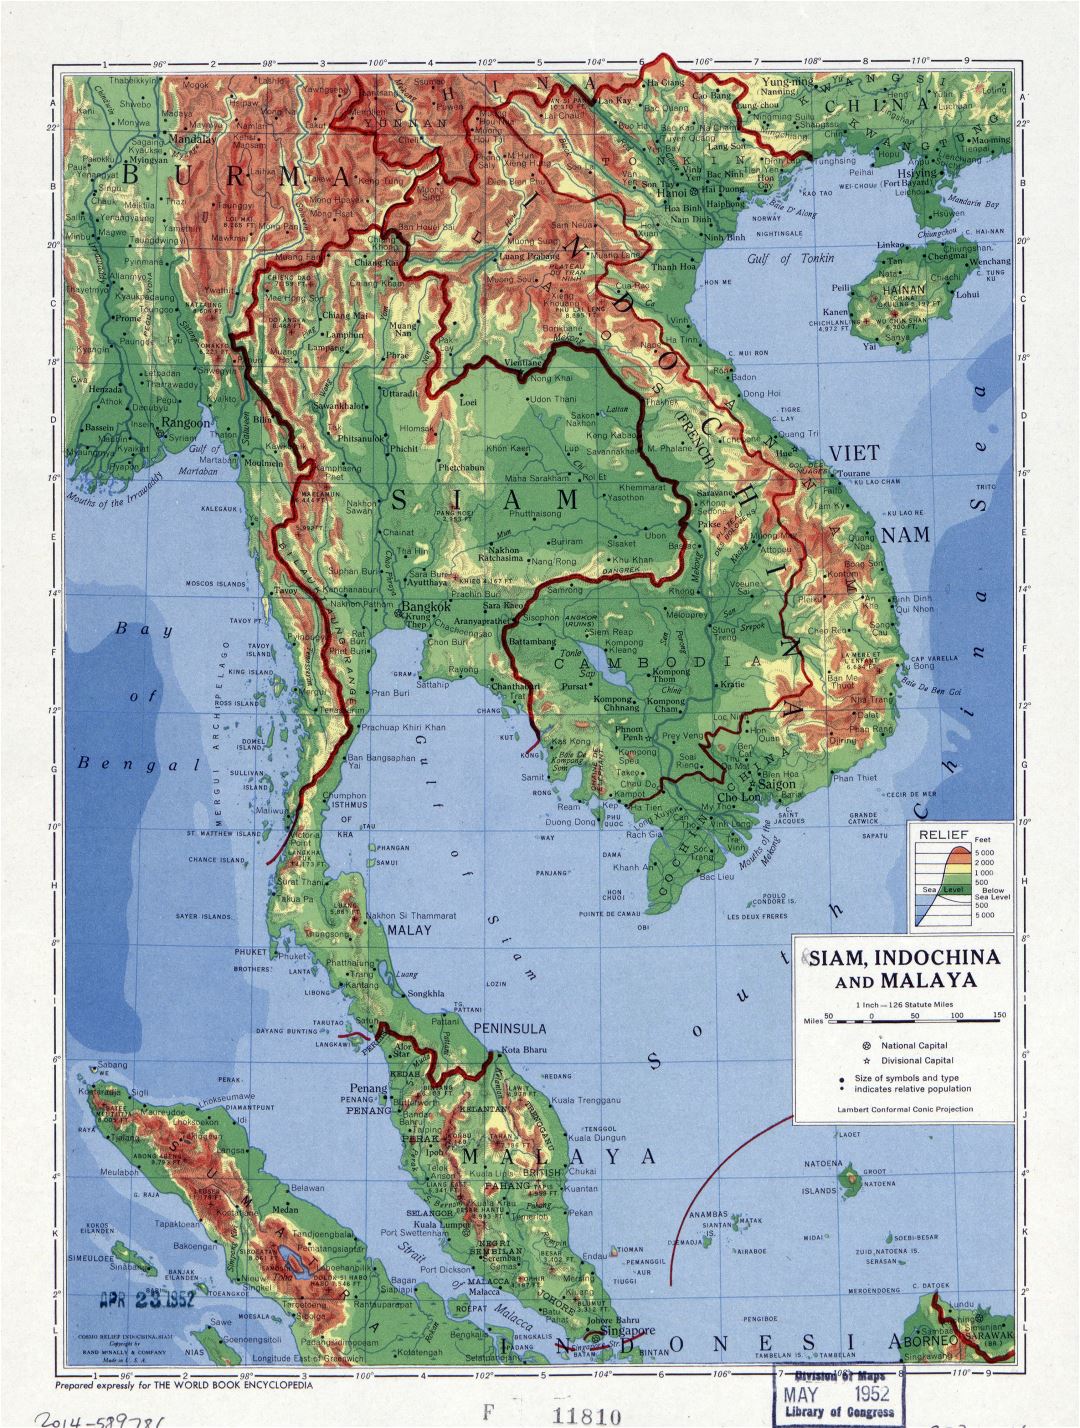 Grande detallado mapa físico de Siam, Indochina y Malaya - 1952